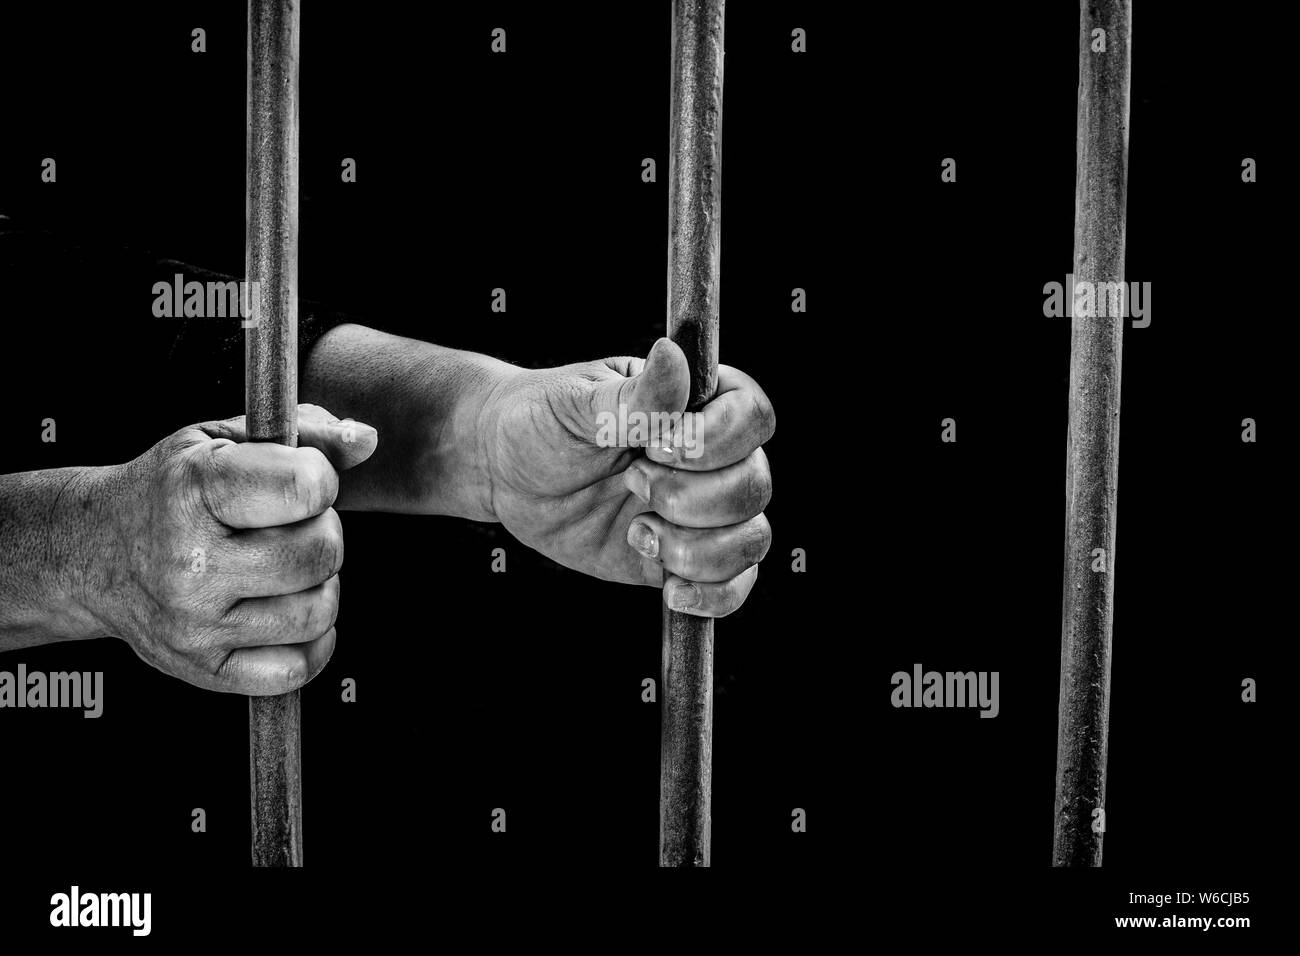 Encarcelado en una prisión oscura sujetando los barrotes de la celda de una prisión en espera de la justicia Foto de stock